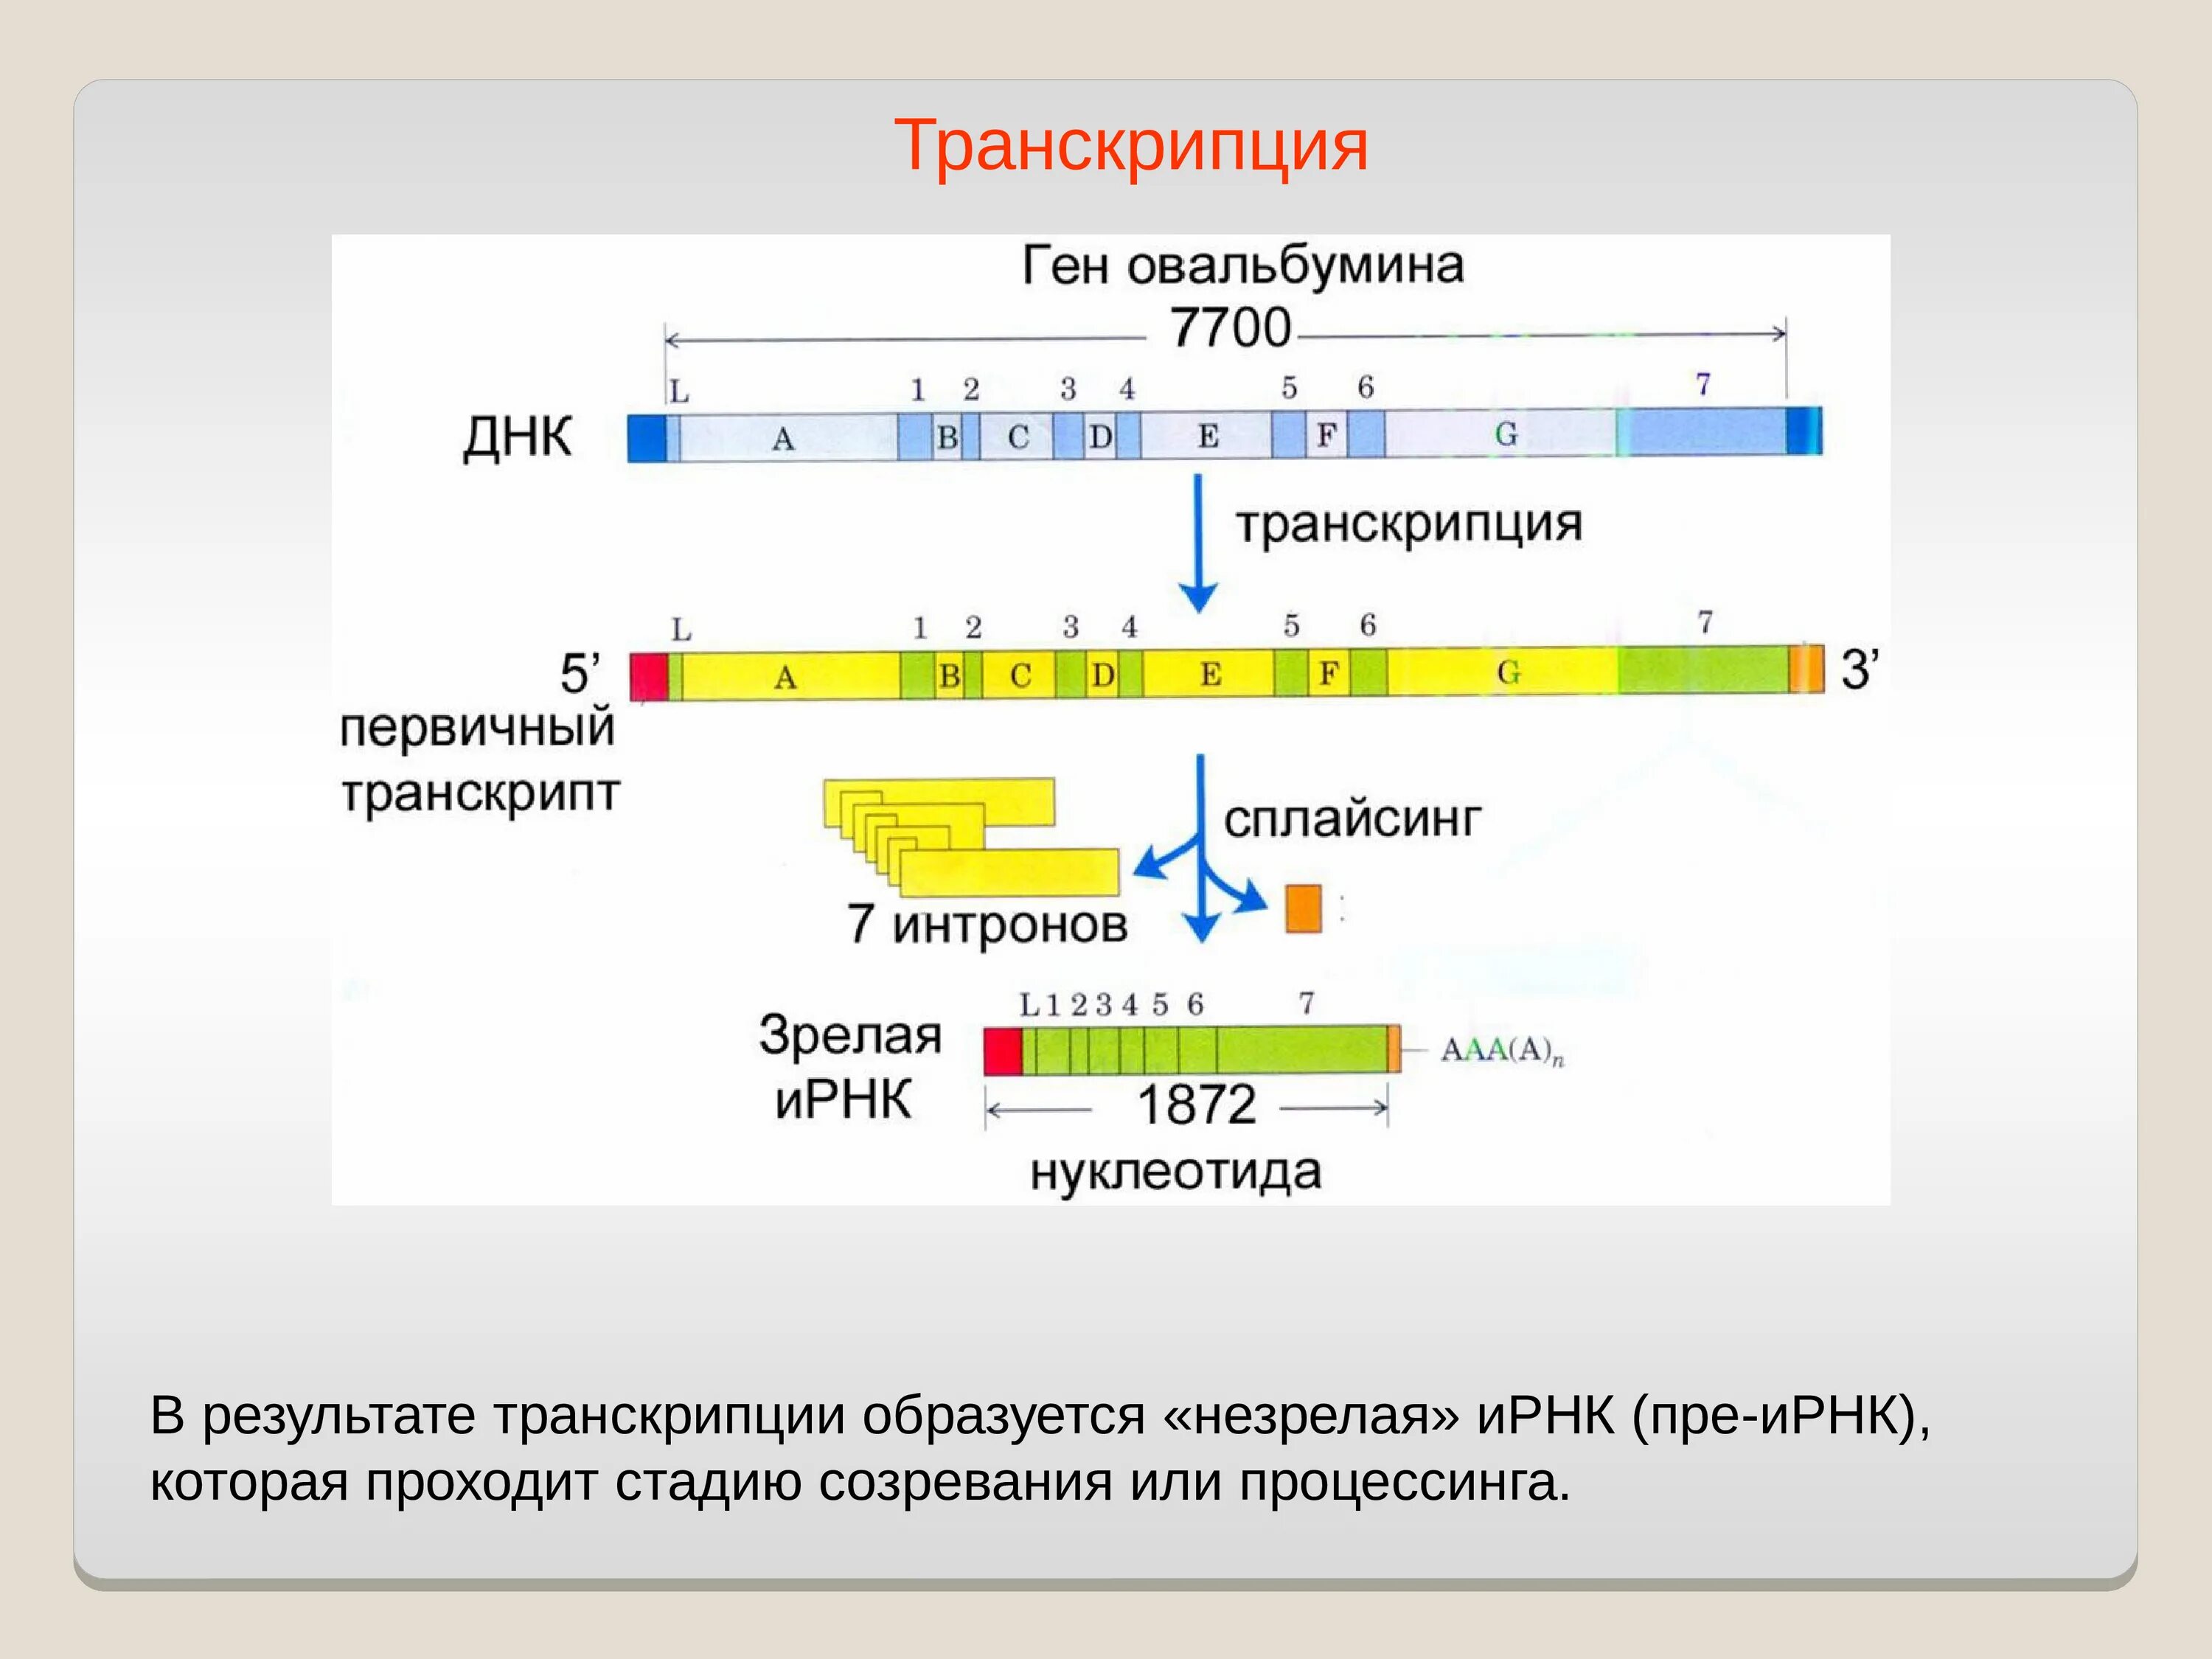 Концы транскрибируемая днк. Процессинг РНК этапы. Транскрипция. Транскрипция ДНК. Основной результат транскрипции.